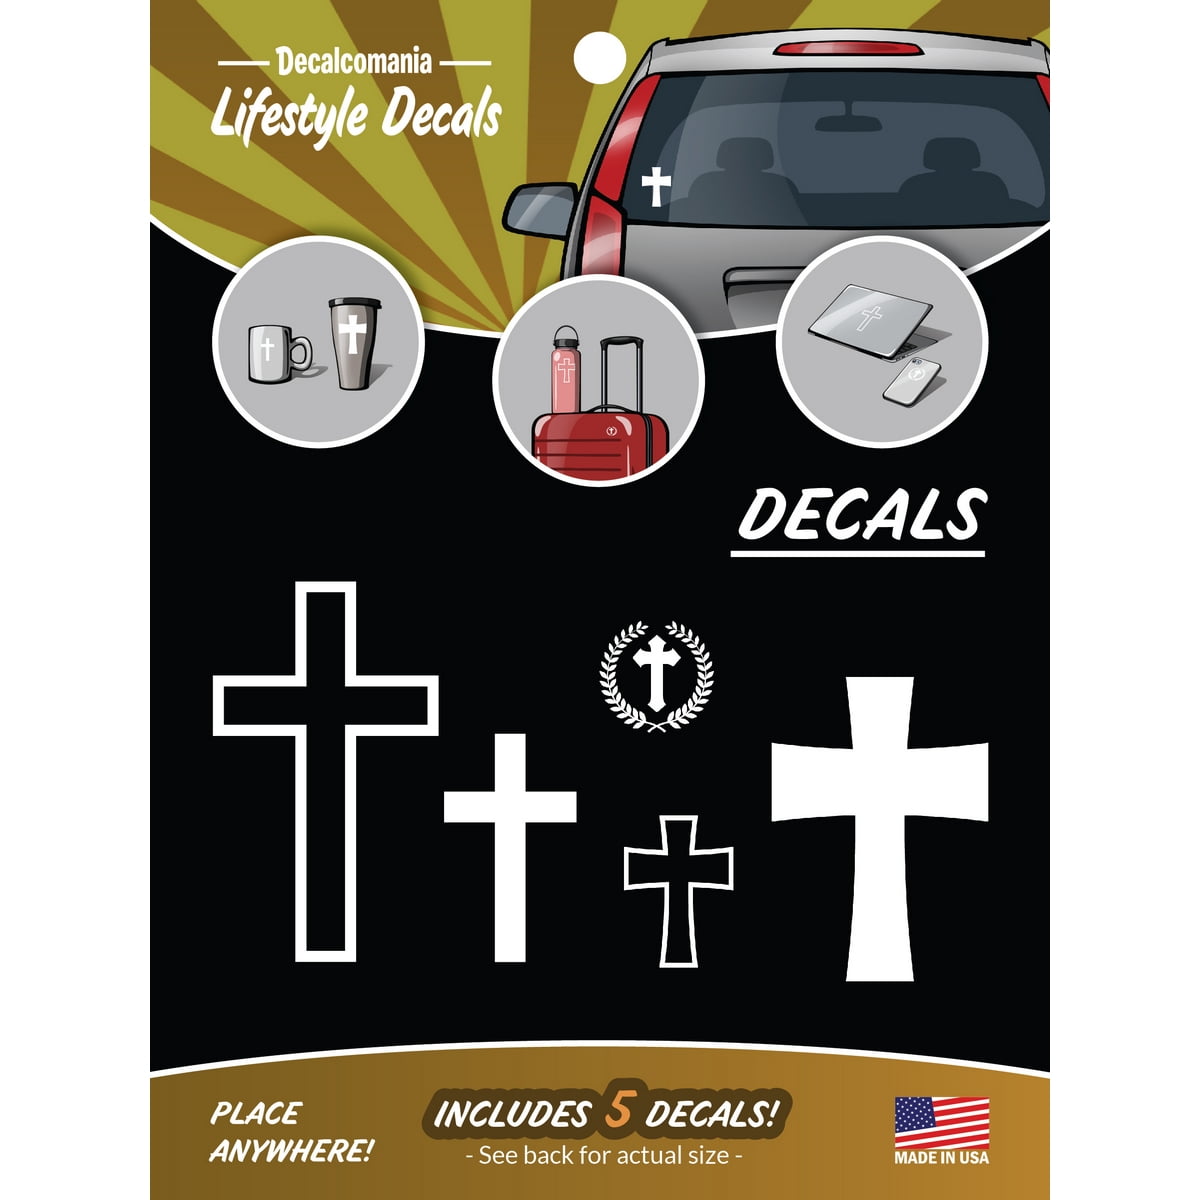 Christian Cross Vinyl Sticker/Decal for Cars,Trucks,Etc. 4.5 White